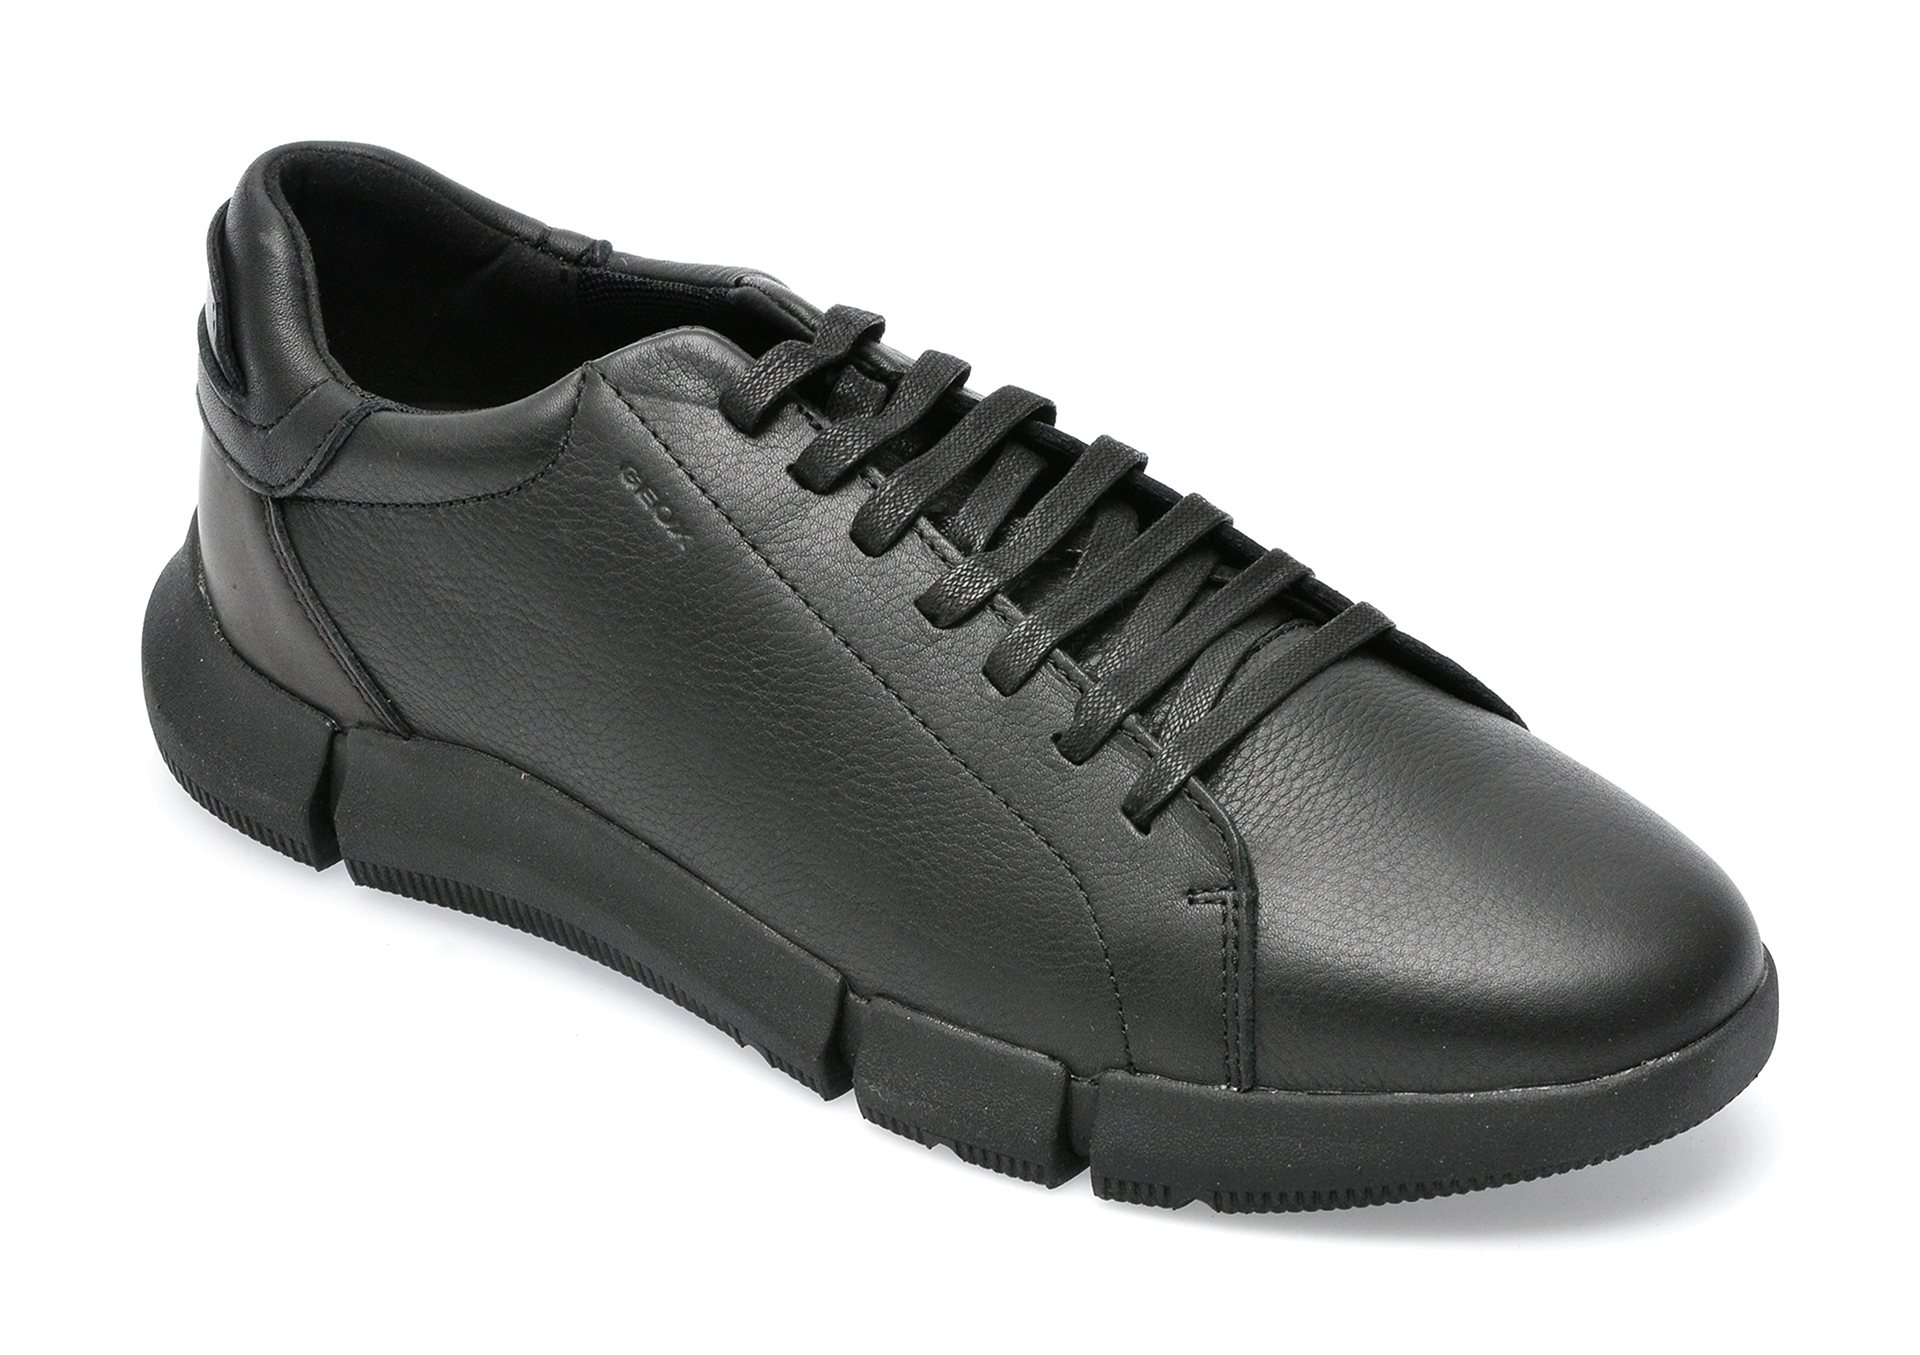 Pantofi GEOX negri, U26FFA, din piele naturala /barbati/pantofi /barbati/pantofi